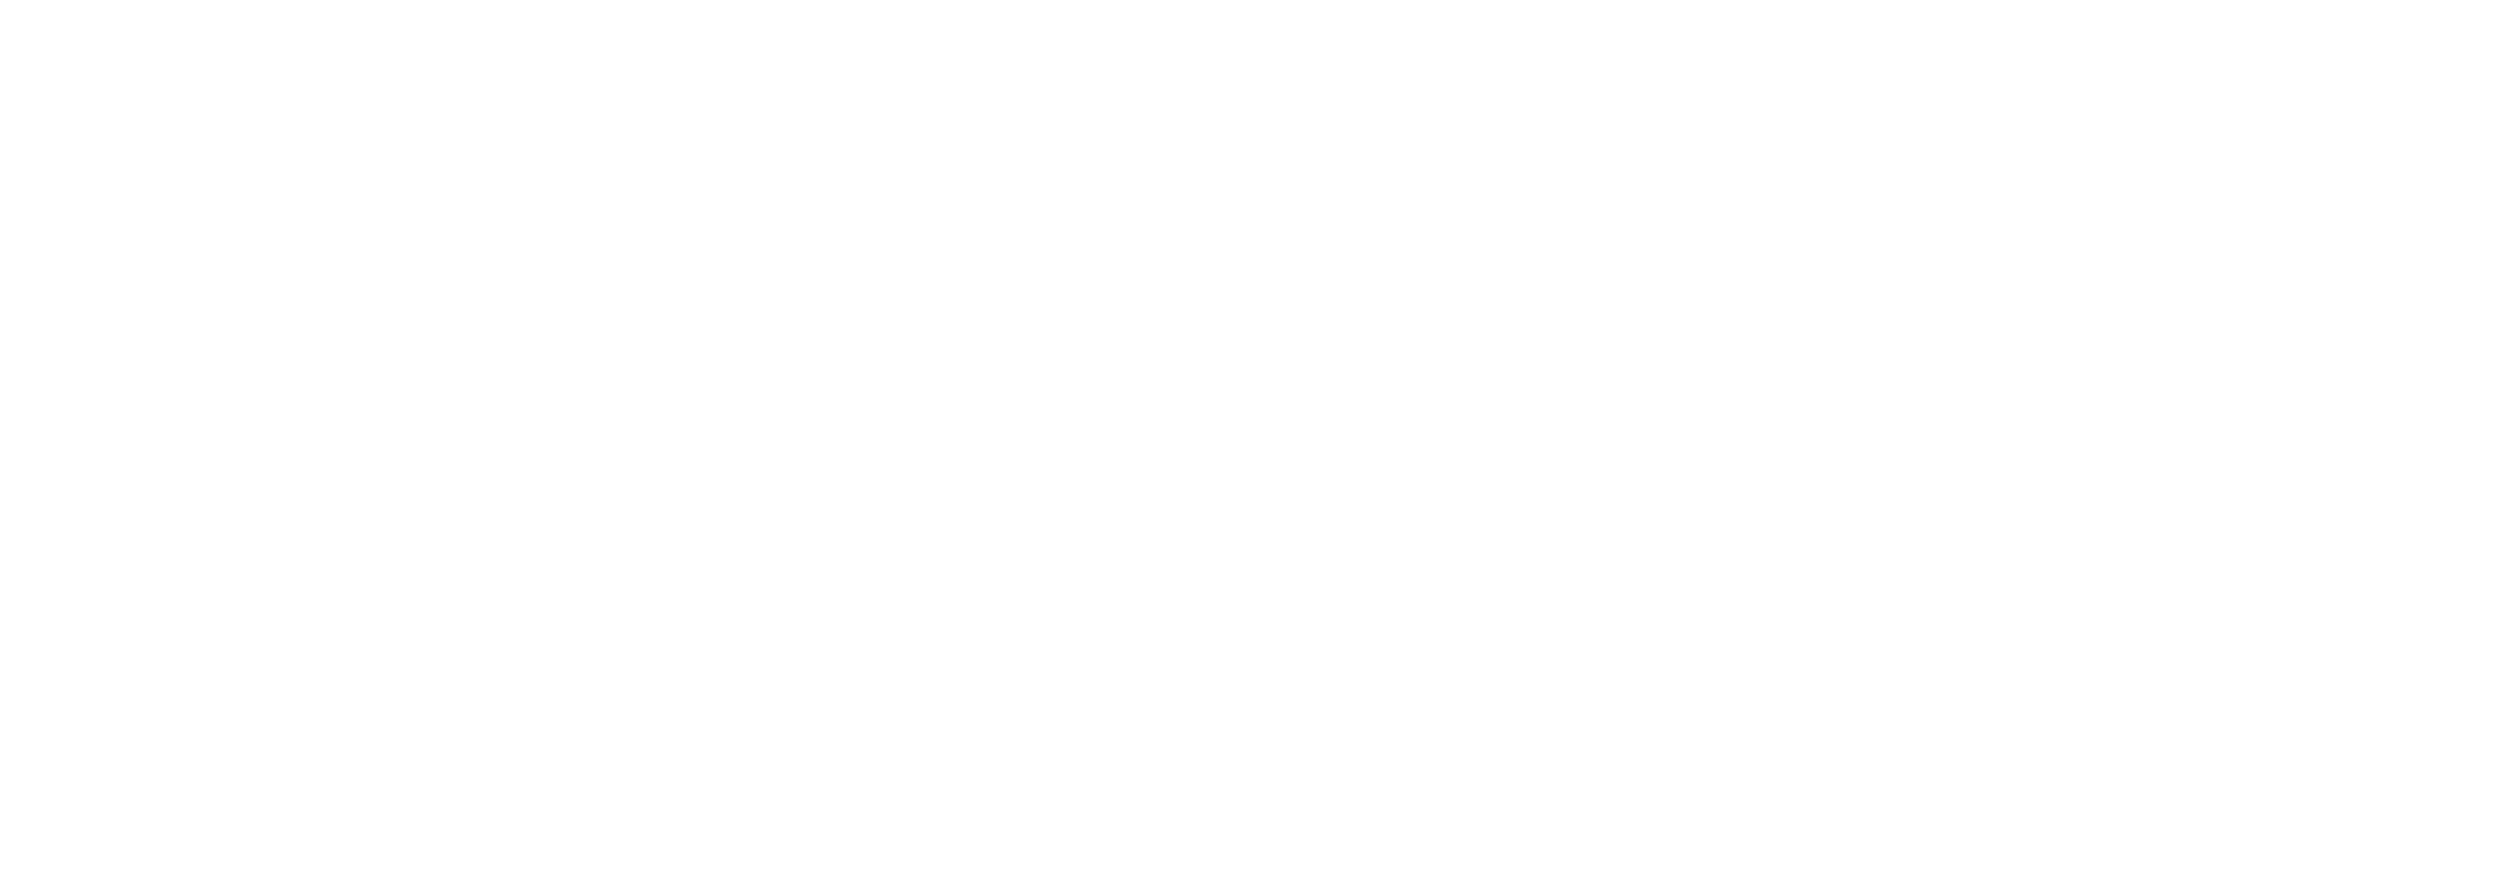 oskar with a k